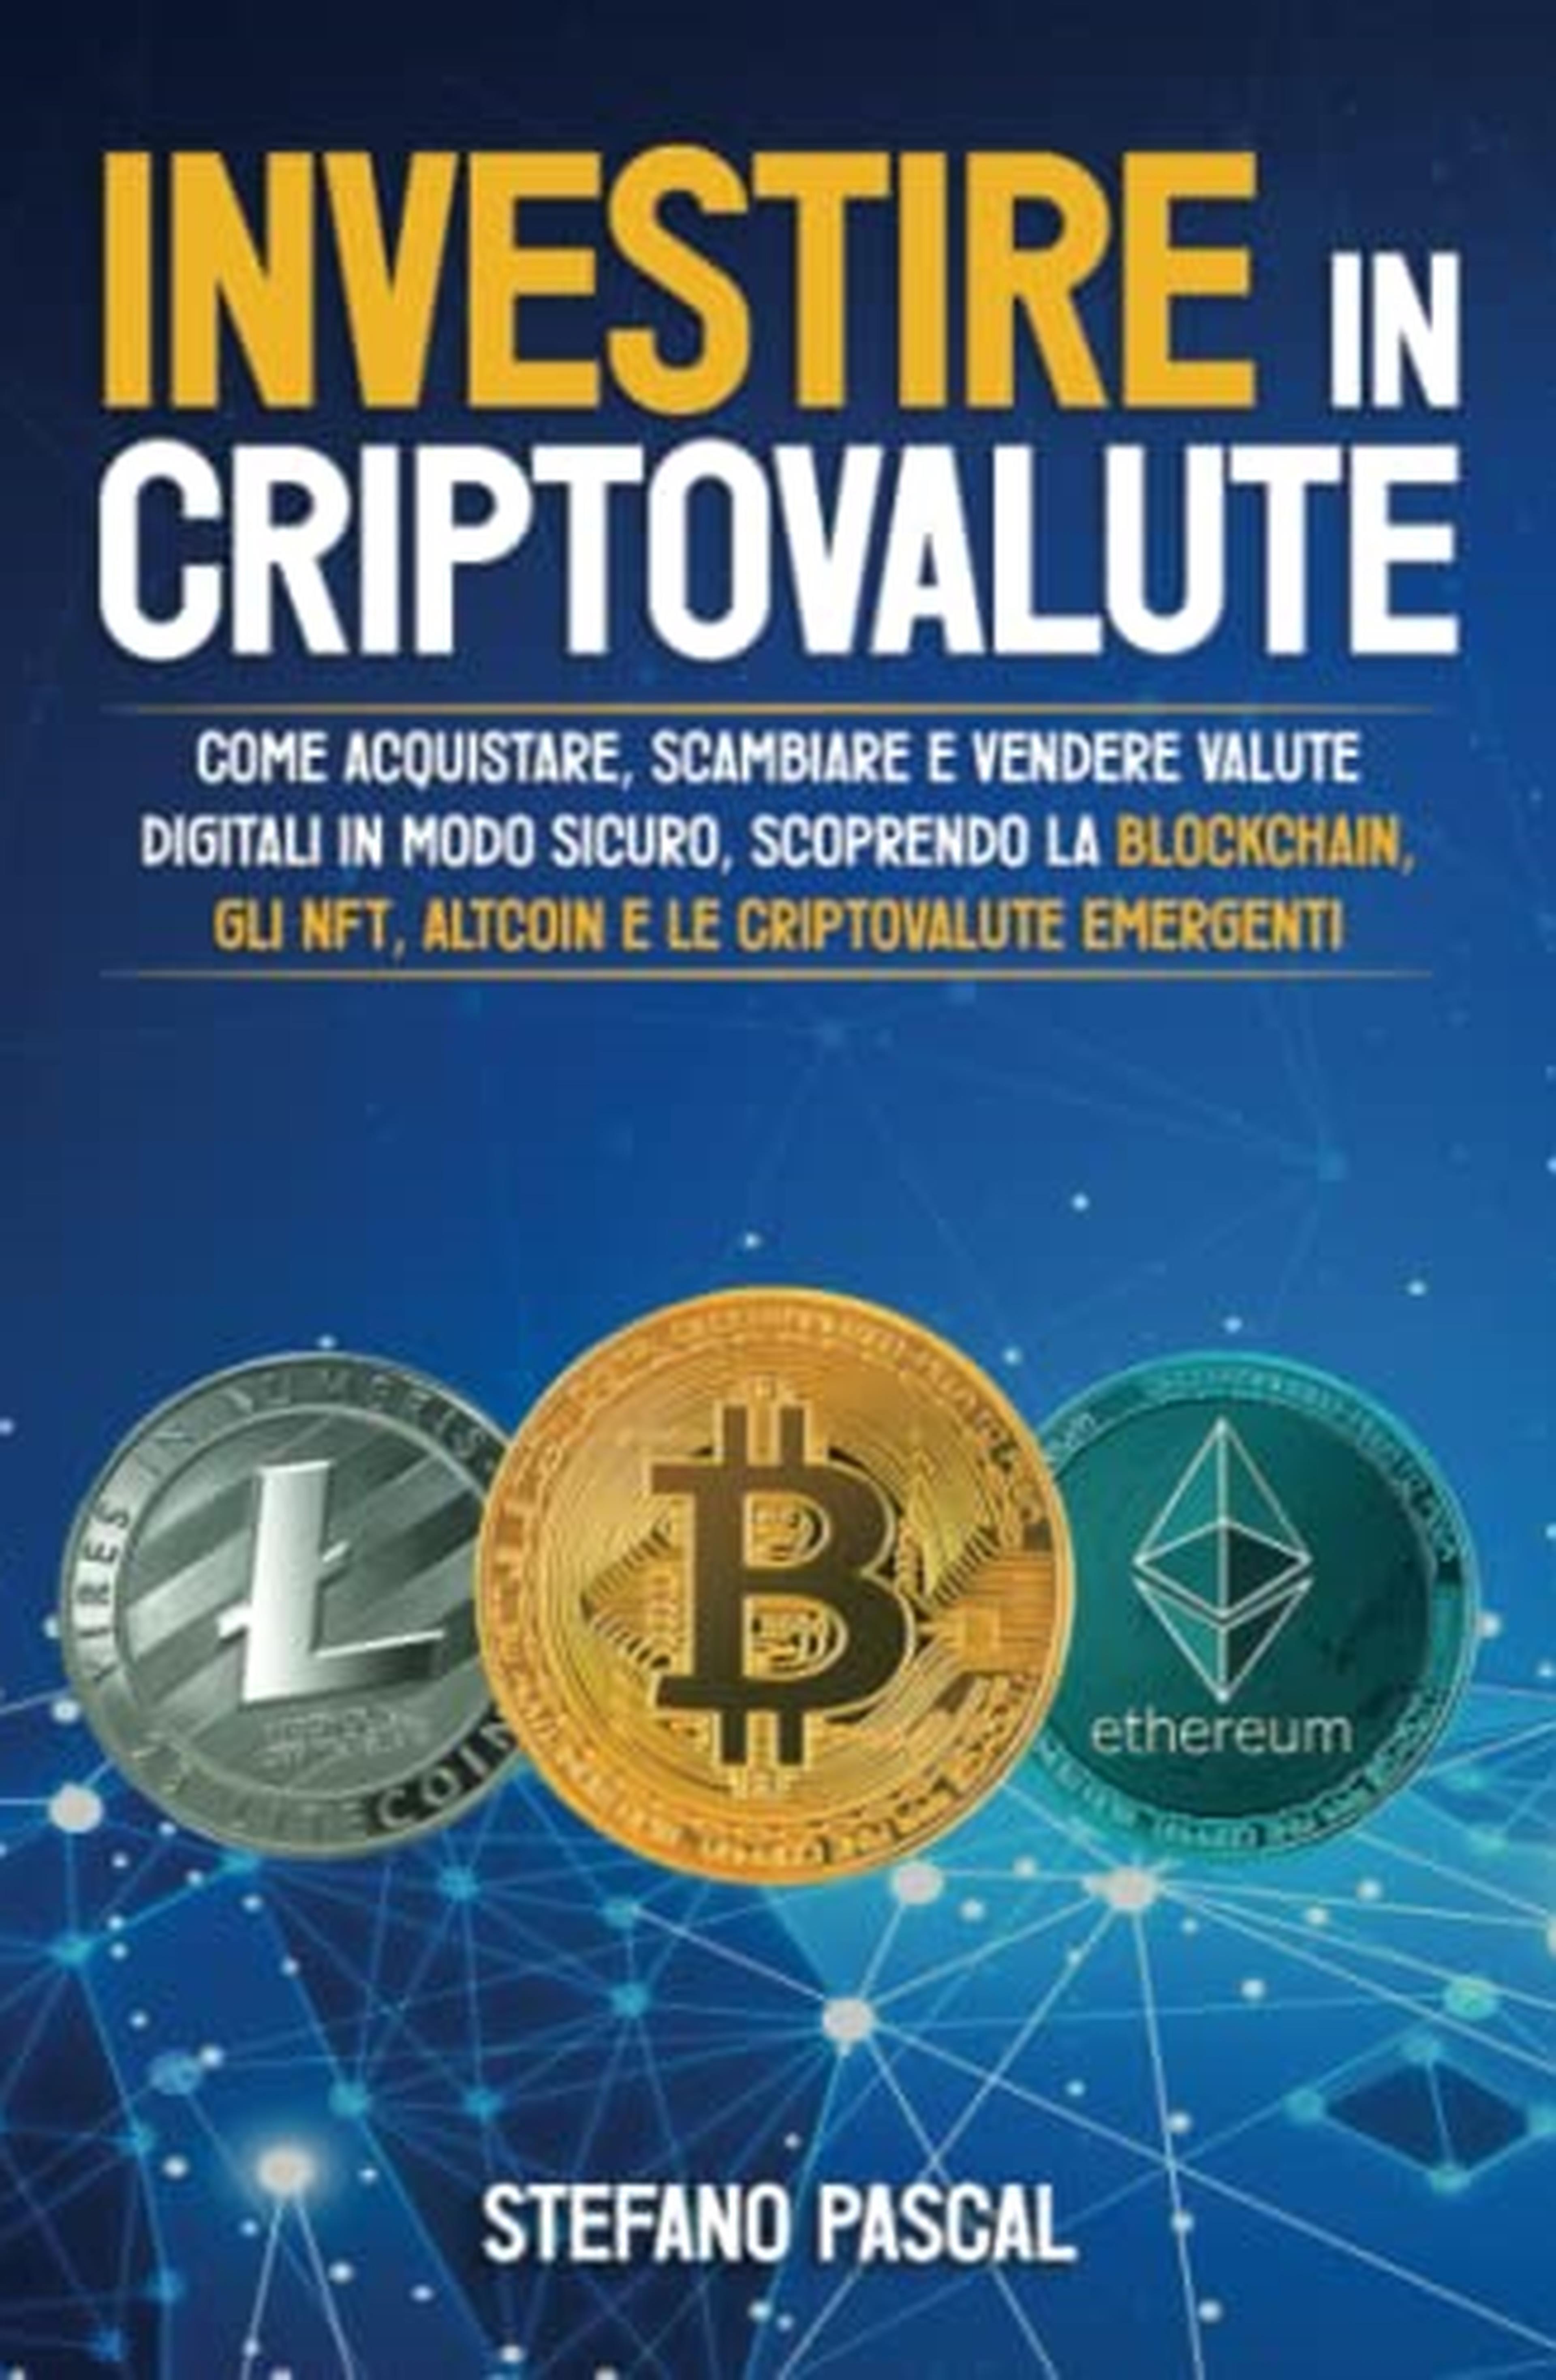 Investire in Criptovalute: Come Acquistare, Scambiare e Vendere Valute Digitali in Modo Sicuro, Scoprendo la Blockchain, gli NFT, Altcoin e le Criptovalute Emergenti.